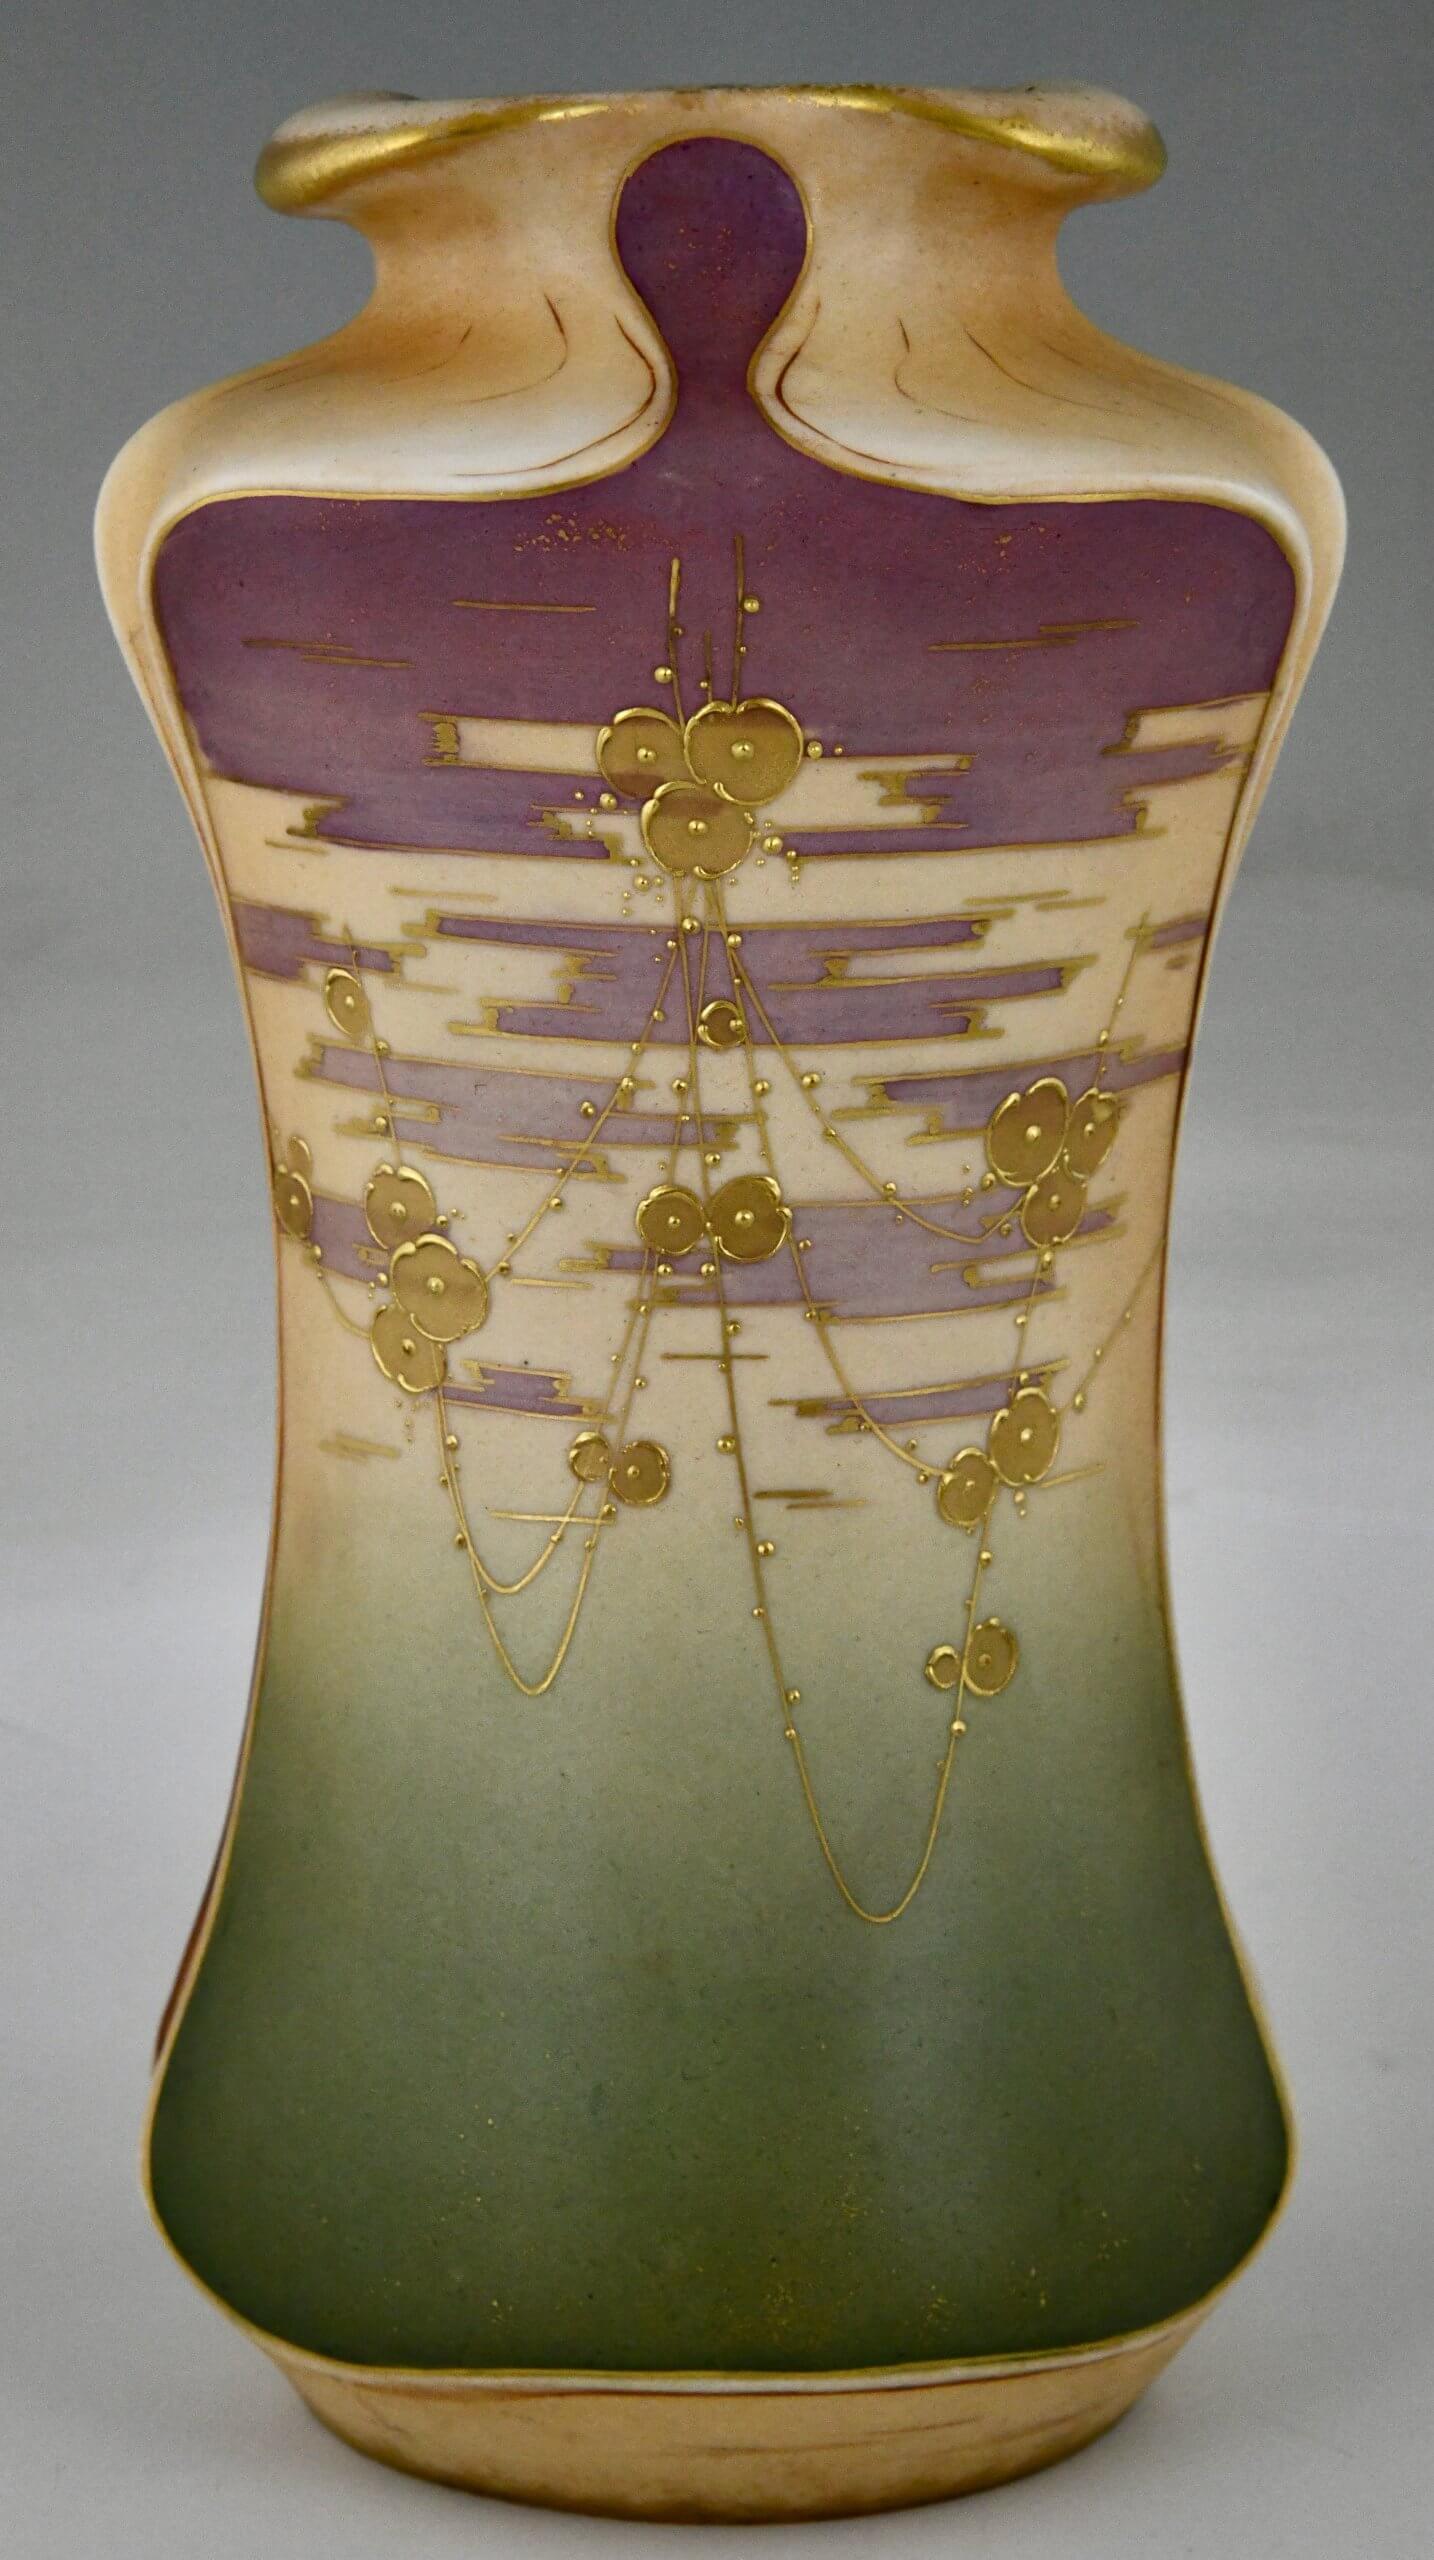 Art Nouveau ceramic vases with gilt flowers.